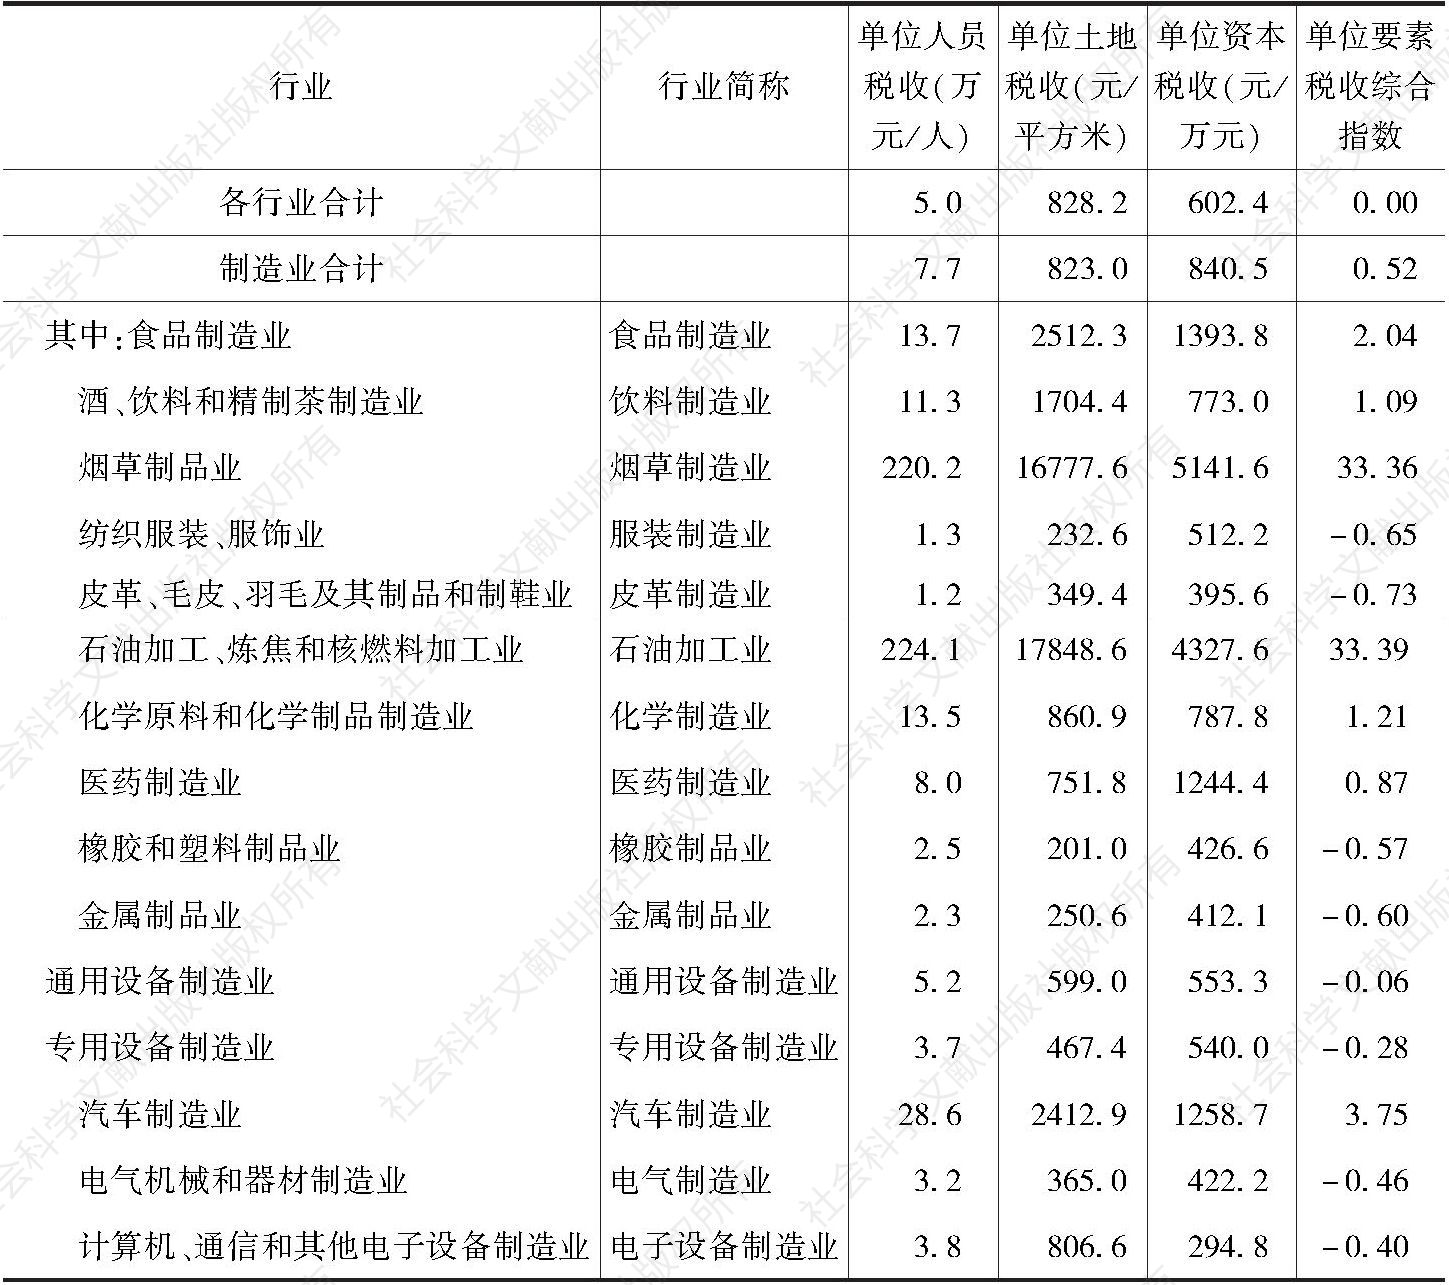 表3 2016年广州市制造业前15大子行业单位要素税收情况